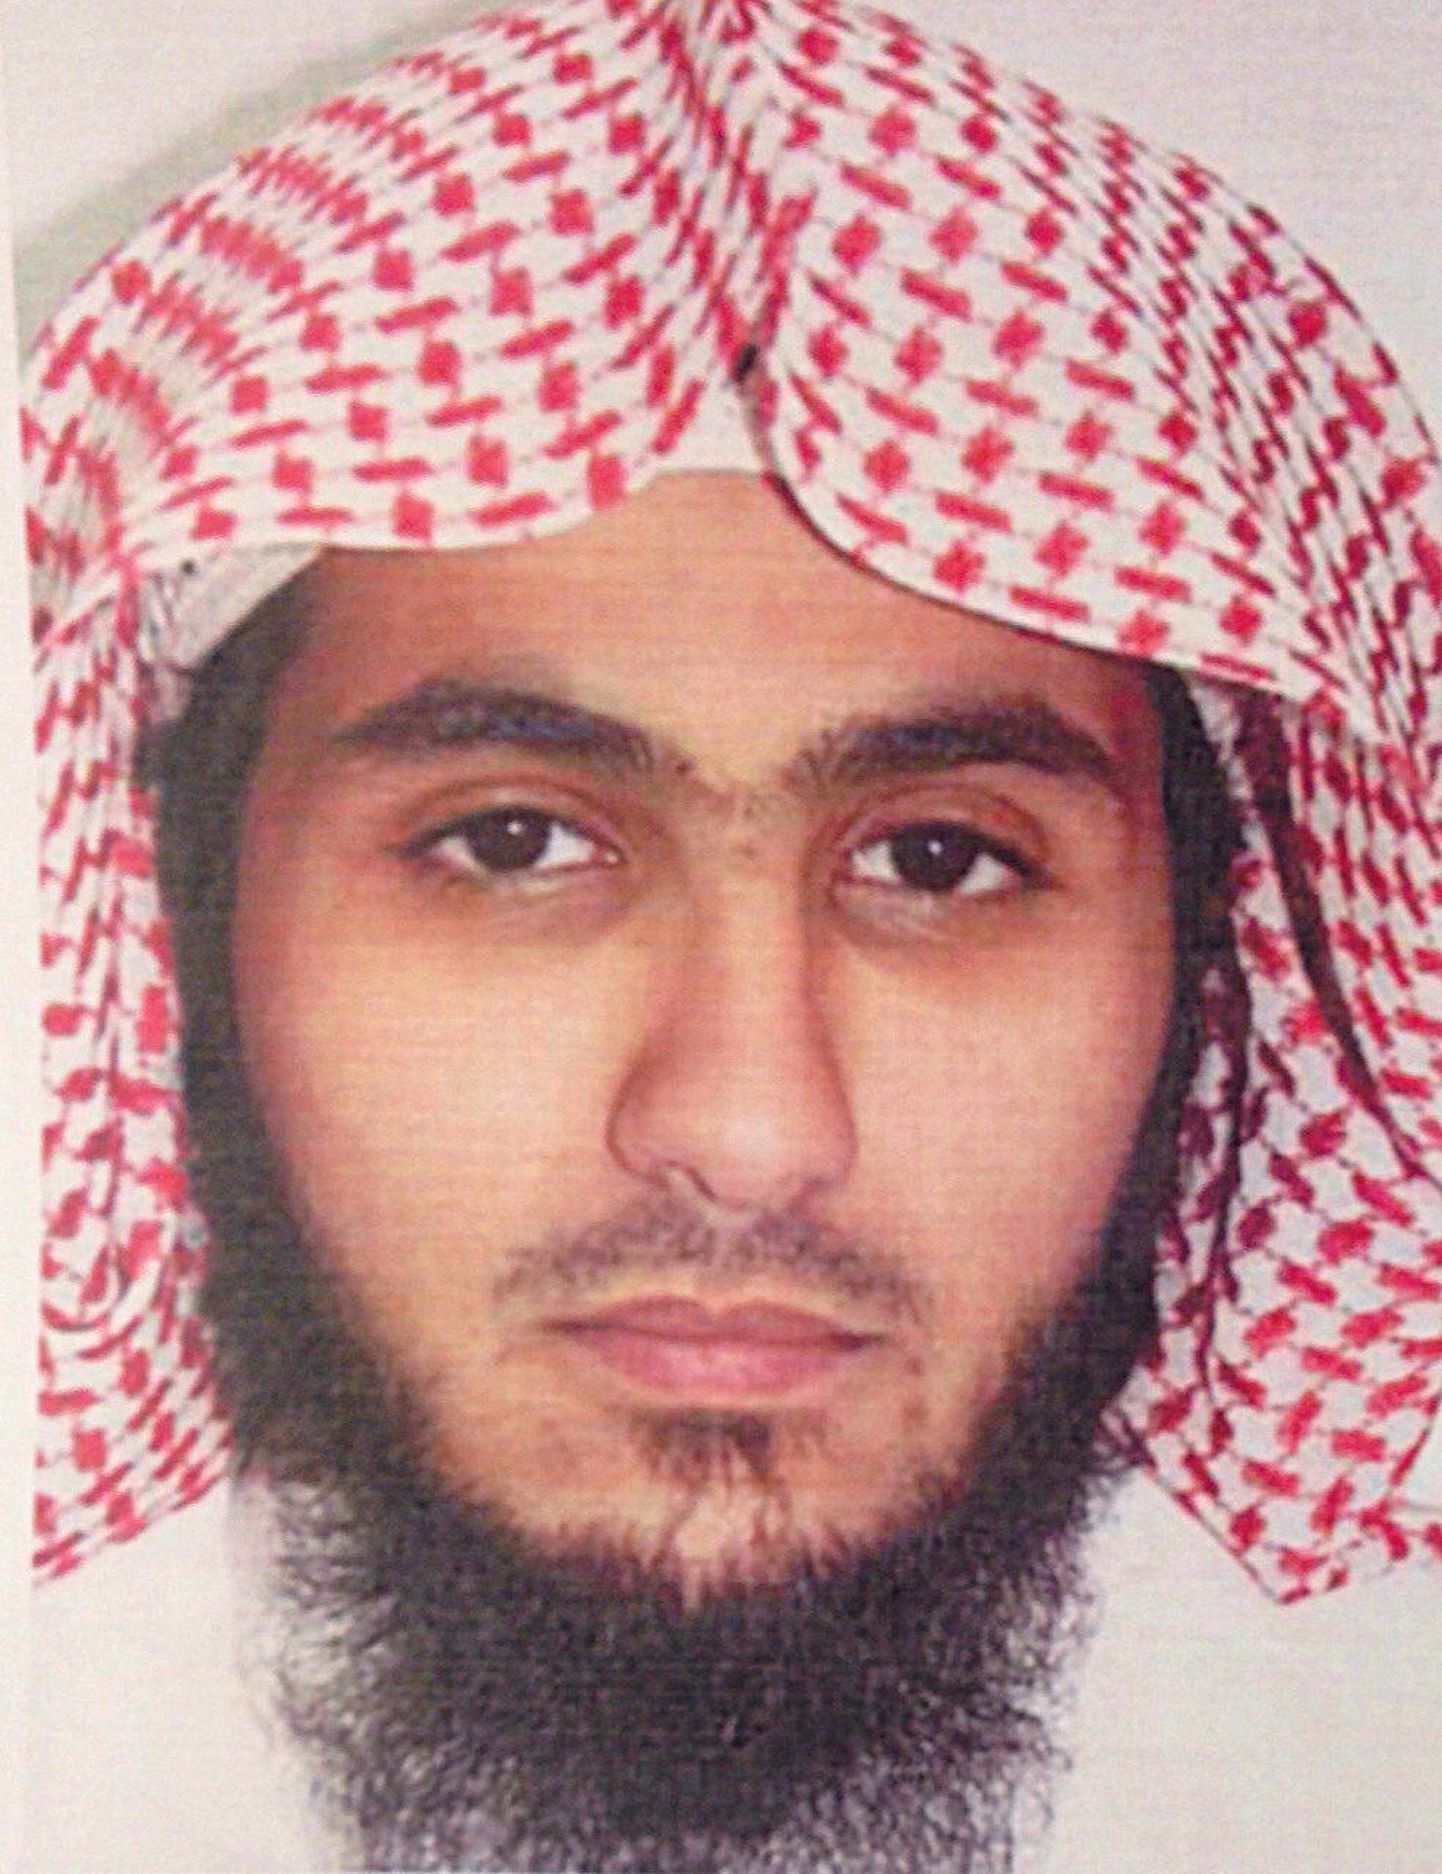 Kuveidi rünnaku korraldanud Suleiman Fahd Abdulmohsen al-Qaba'a